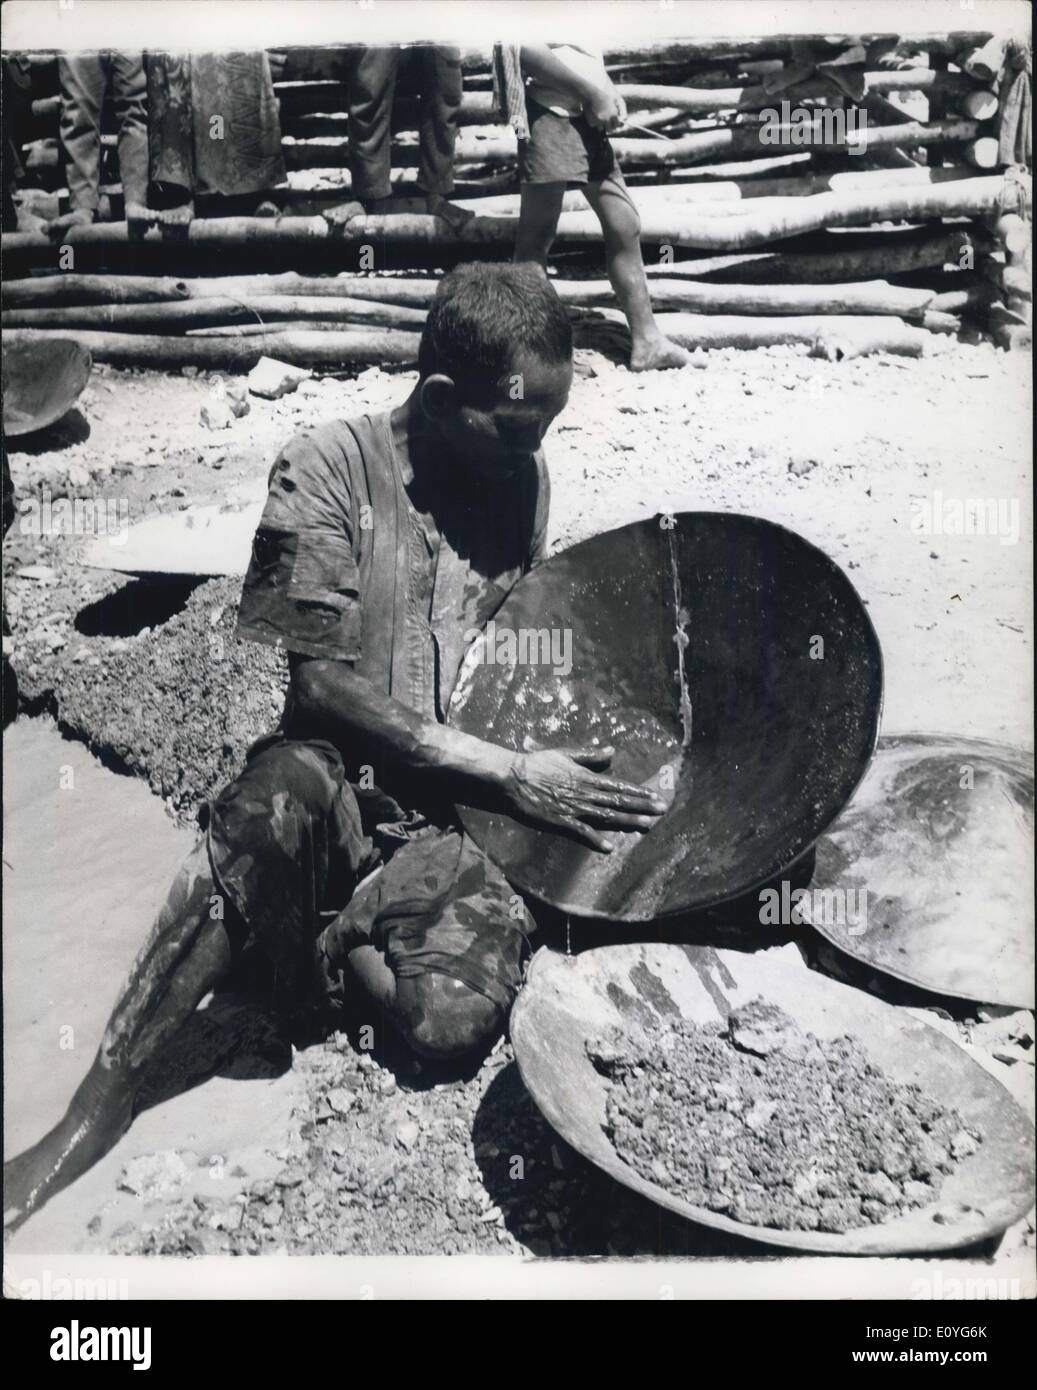 Il 1 gennaio, 1970 - Oro lavaggio in Cambogia: nativo il lavaggio la polvere d oro in padelle. Ognuno cerca di oro in Cambogia: In indocinese stato della Cambogia, a dispetto del vedere-sega situationsthat politico hanno sconvolto il paese dopo la guerra, gli abitanti di un villaggio di nativi raramente hanno perso il loro gusto per la caccia di oro. Nella foresta di villaggi, come Phnom Luong, quasi ogni uomo donna e bambino aiuta nella ricerca costante per la ricchezza di minerali, le persone nelle zone di piegatura indicate dal grillo villaggi e rivendicare il diritto, e scavare e scavare e lavare e lavare Foto Stock